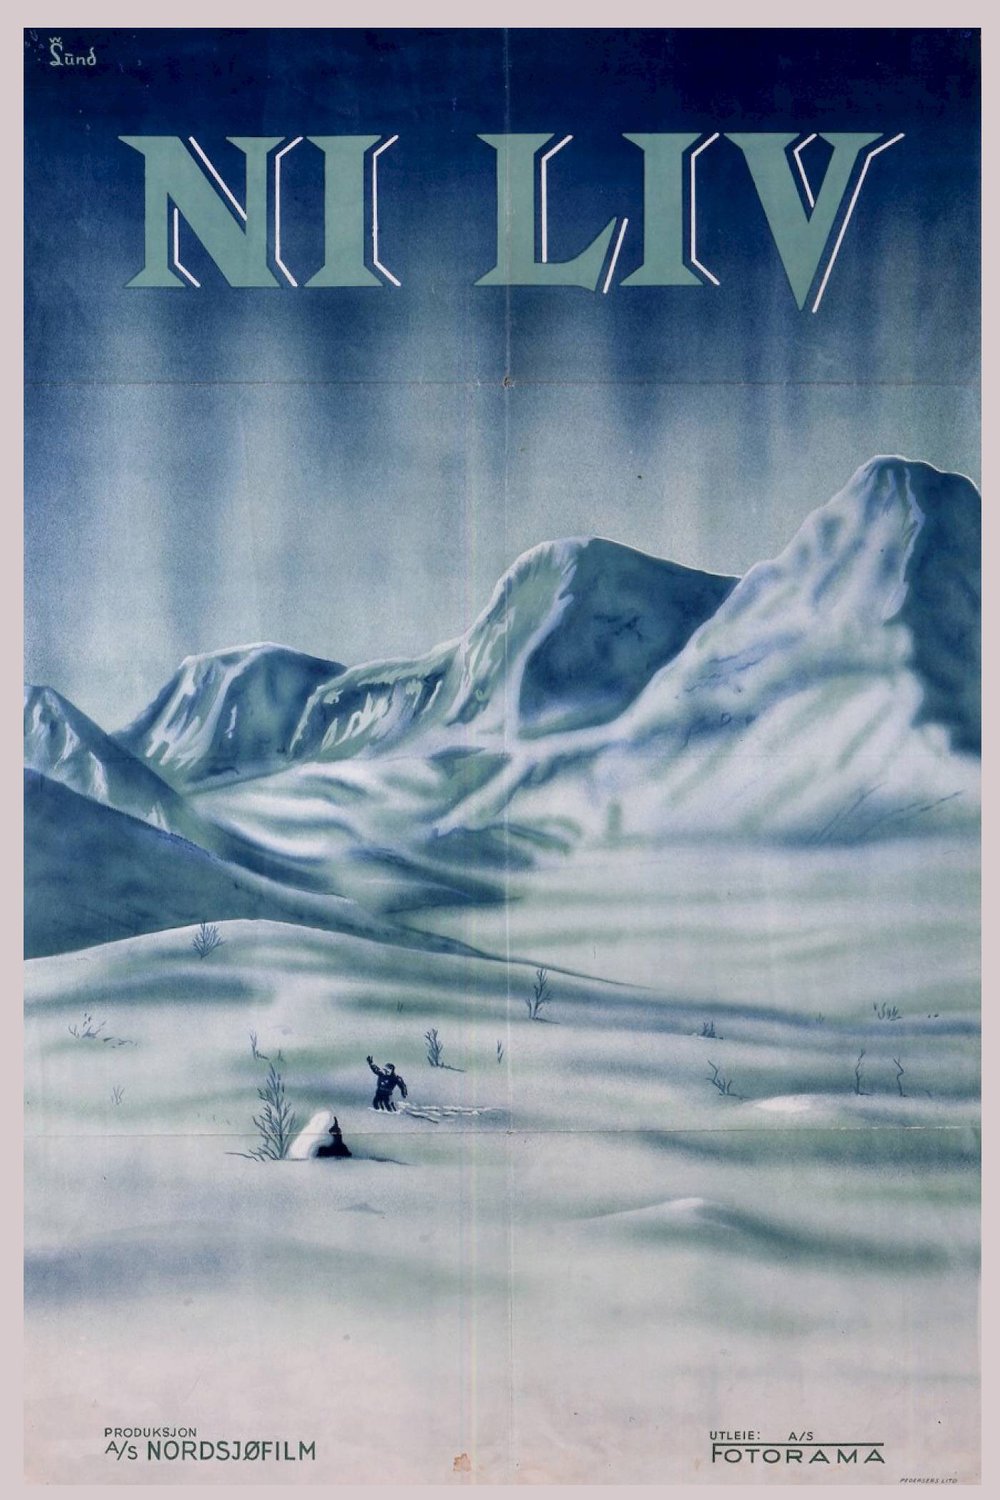 L'affiche originale du film Nine Lives en norvégien